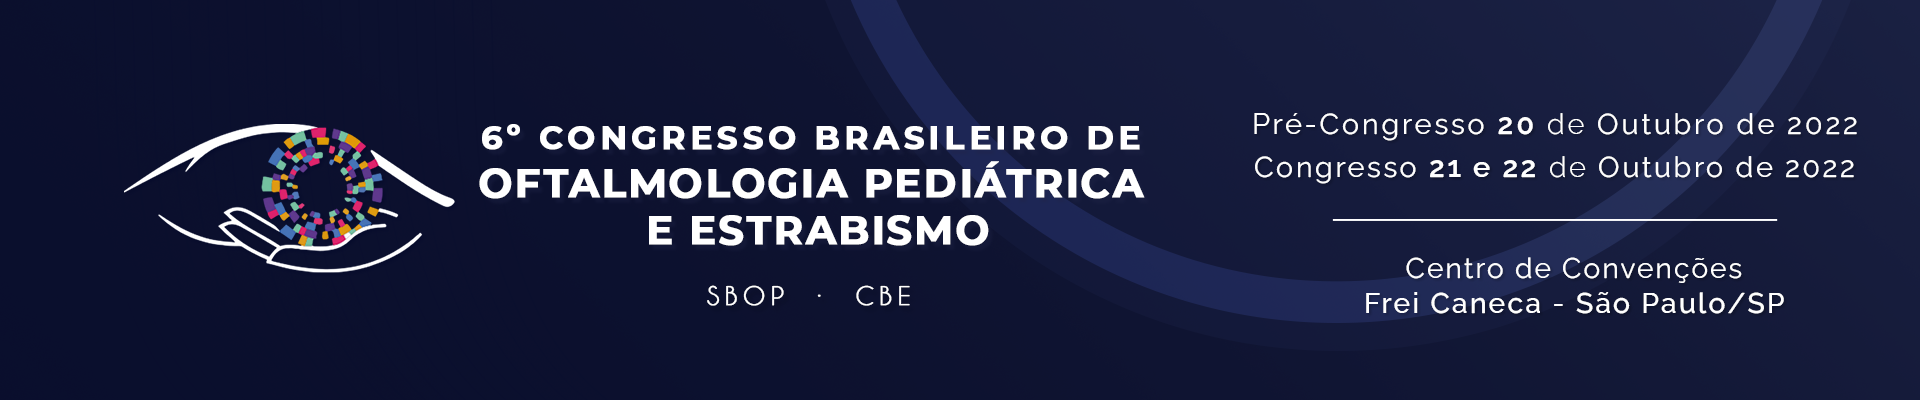 6° Congresso Brasileiro de Oftalmologia Pediátrica e Estrabismo